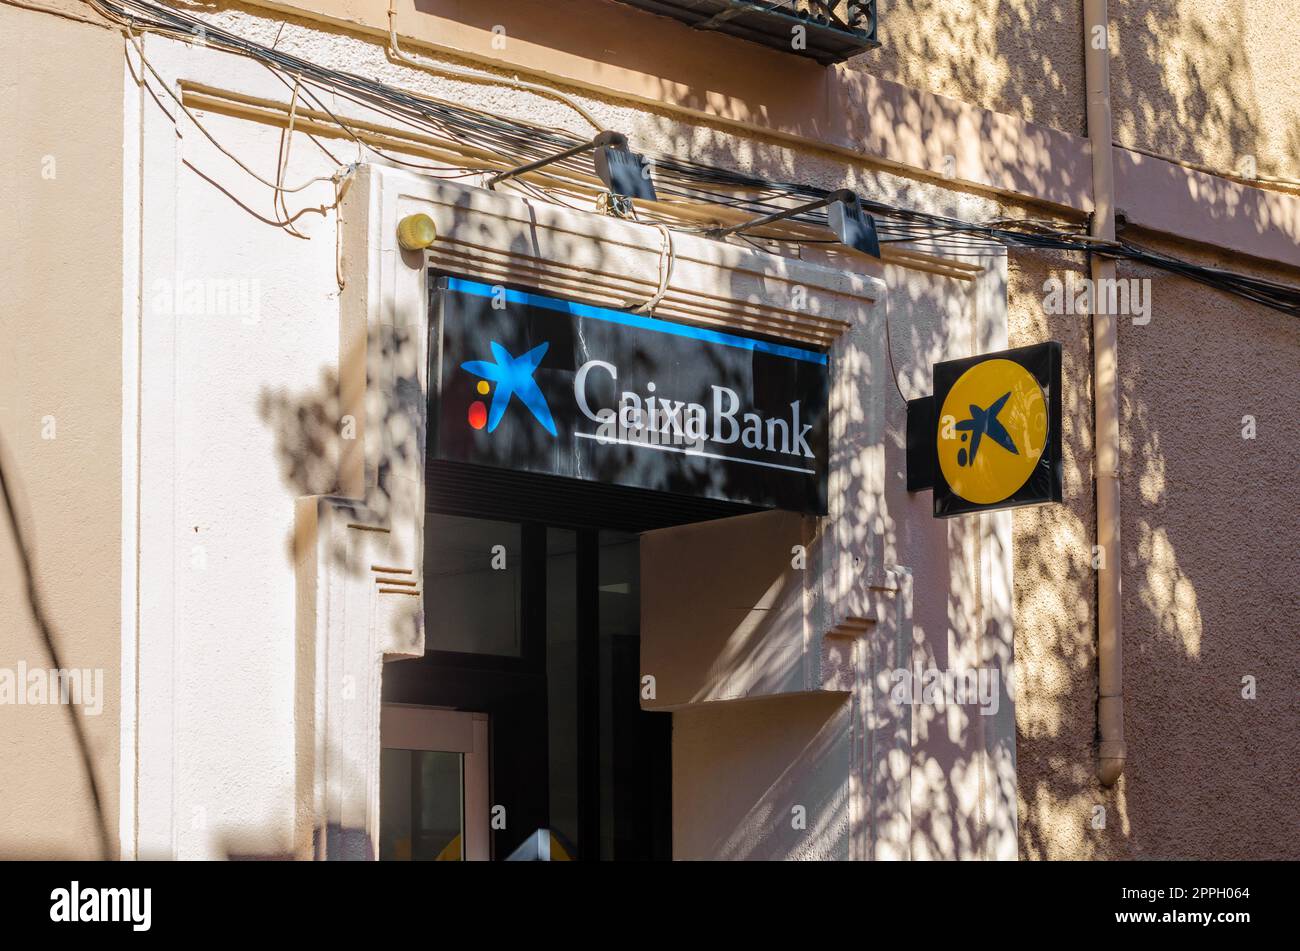 SAN LORENZO DE EL ESCORIAL, SPANIEN - 24. OKTOBER 2021: CaixaBank-Logo auf einer Zweigstelle einer Bank in San Lorenzo de El Escorial, Spanien. CaixaBank ist ein spanisches multinationales Finanzdienstleistungsunternehmen Stockfoto